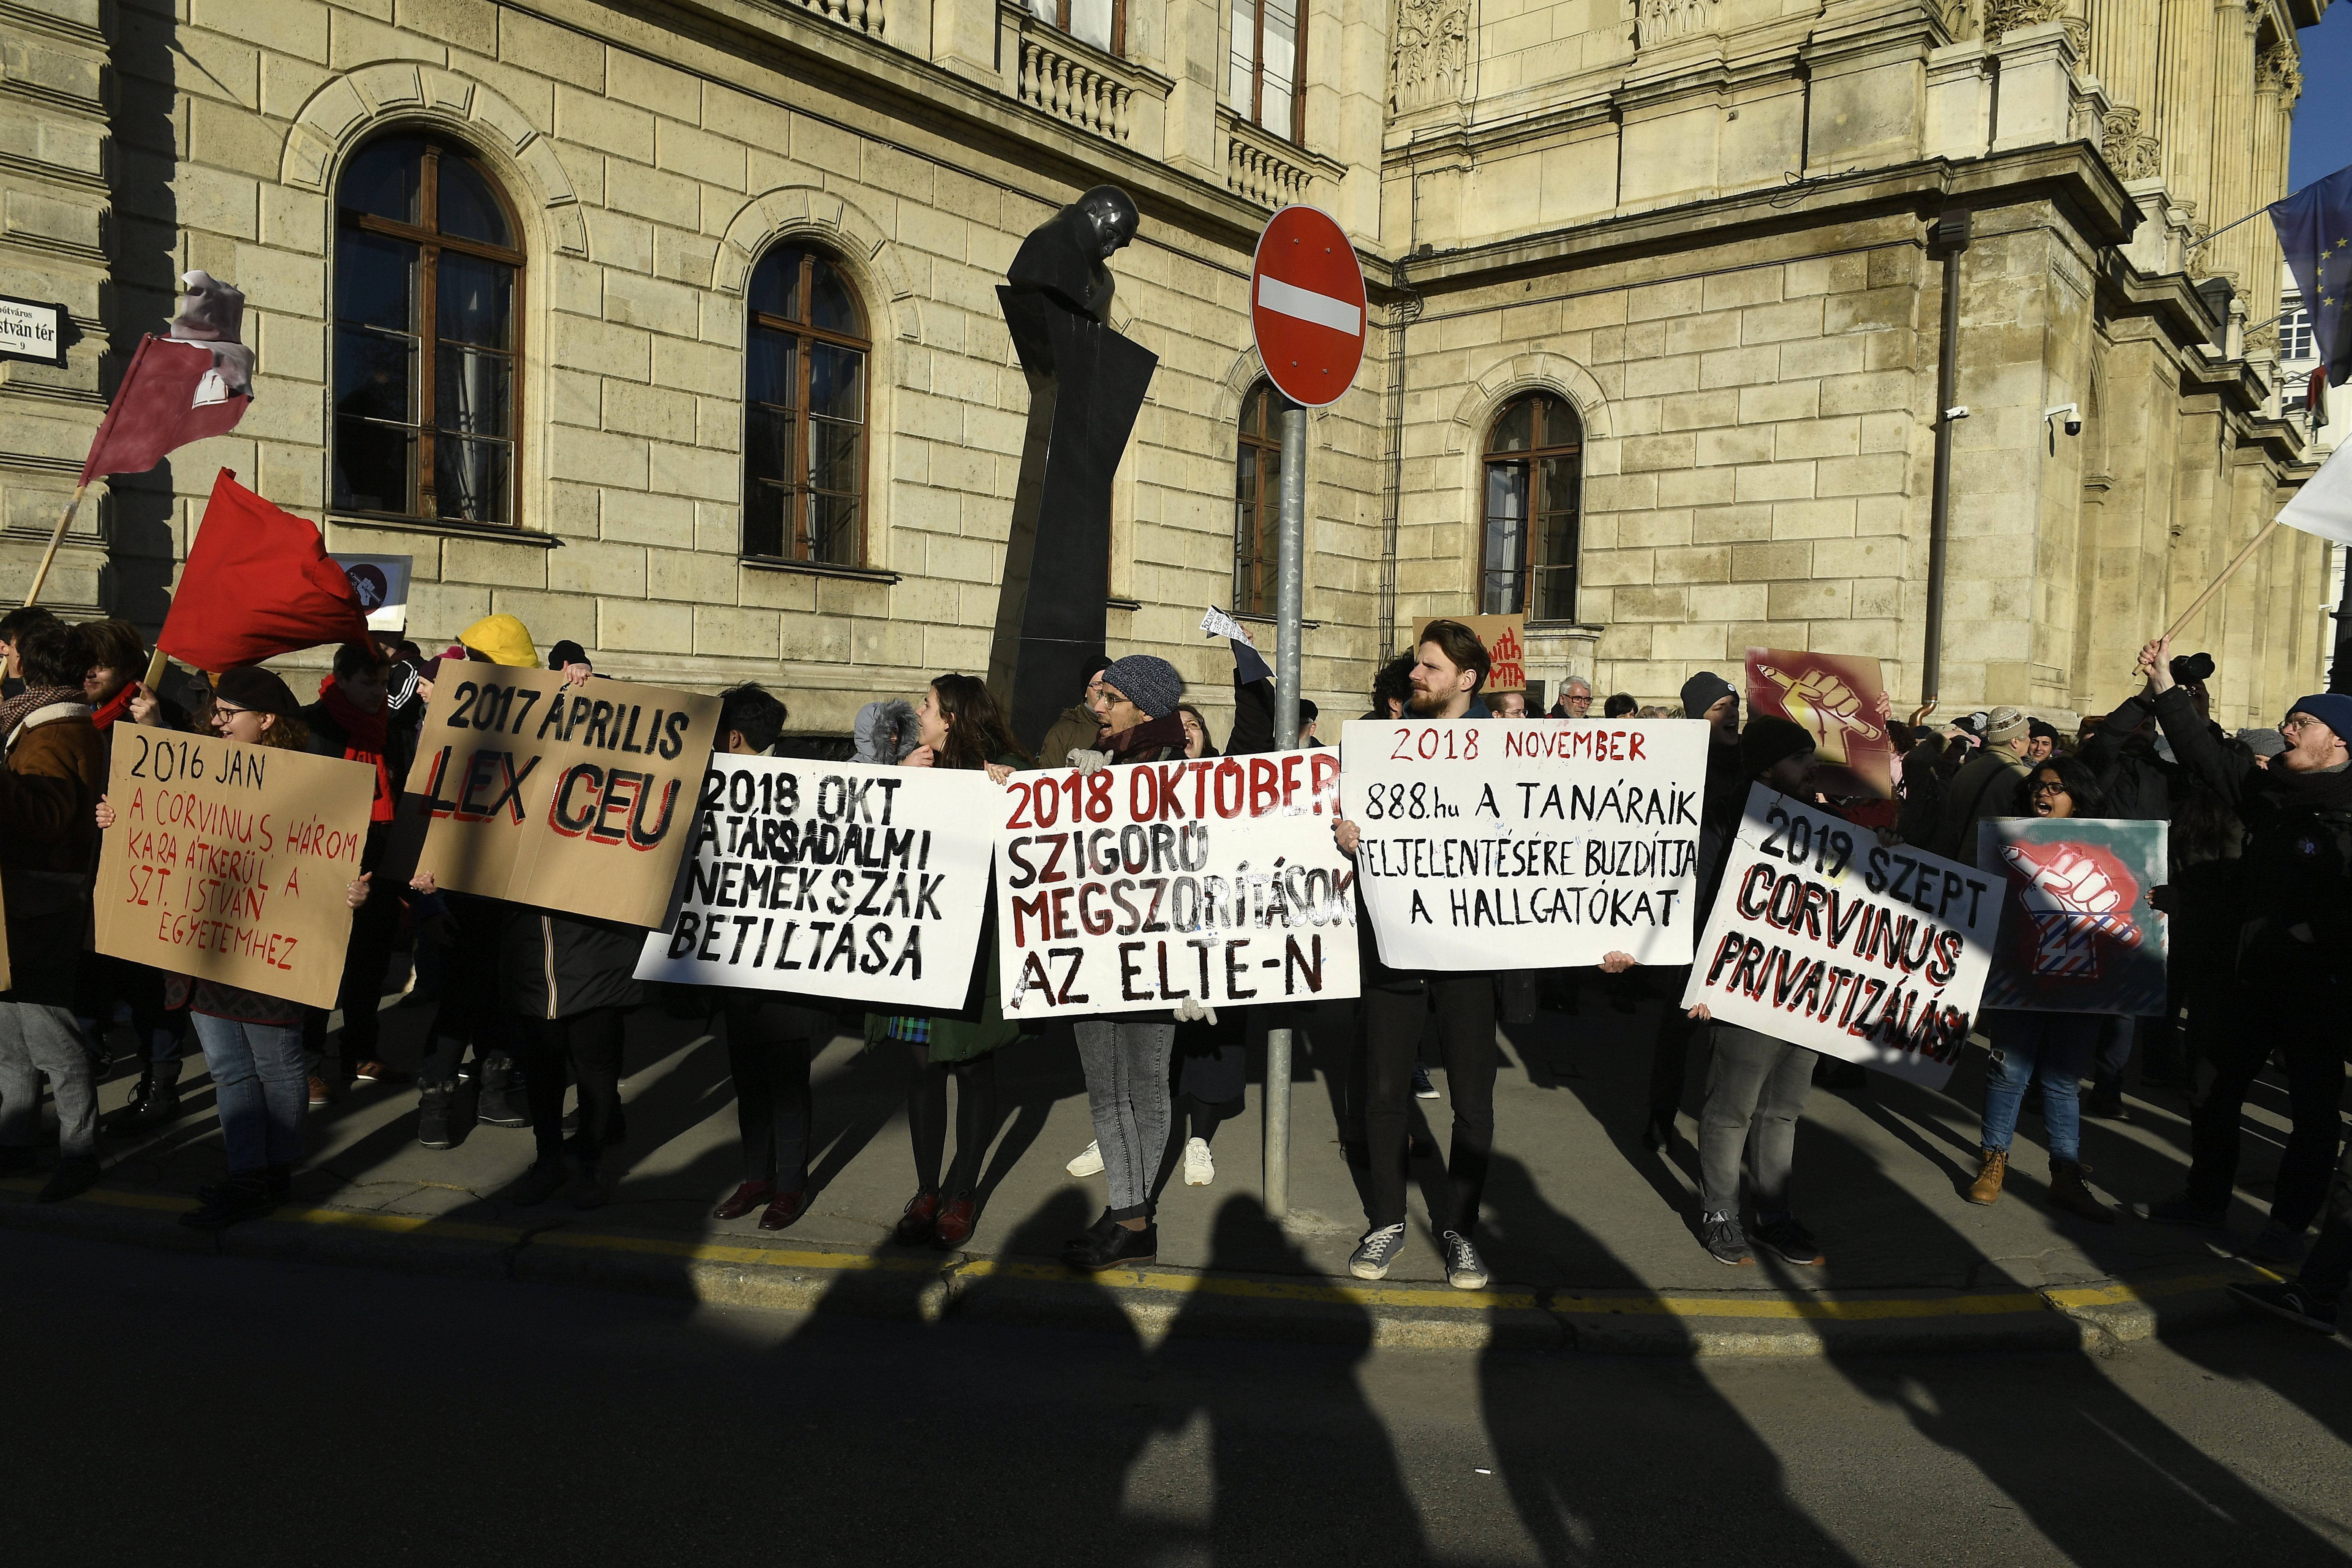 Співробітники Угорської академії наук протестують проти реорганізації